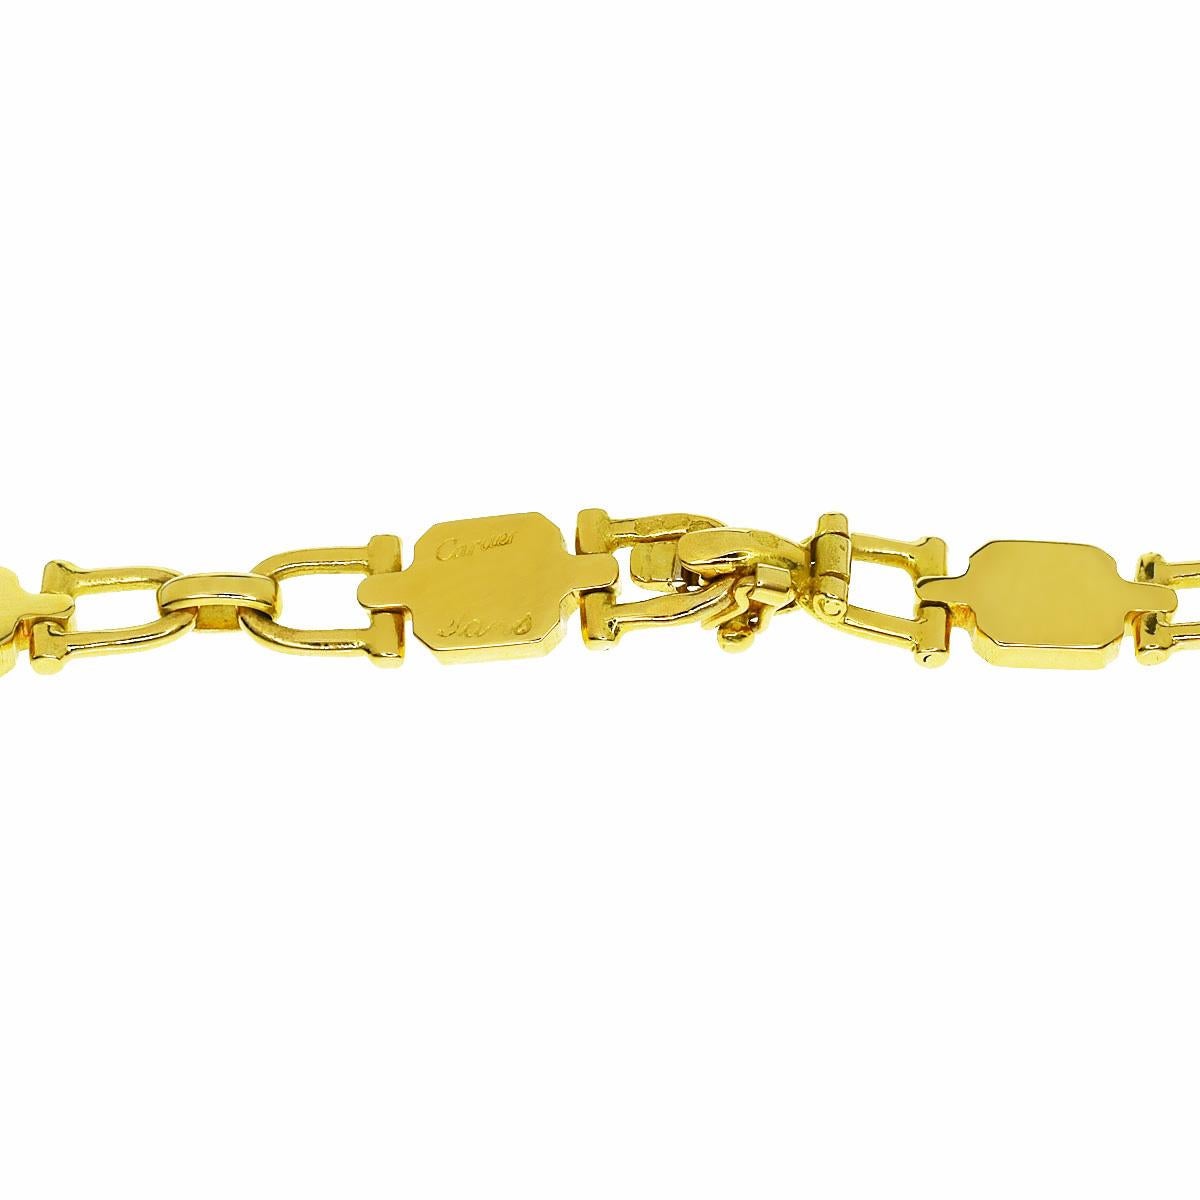 A magnificent Cartier Paris chain link necklace measuring 32.25